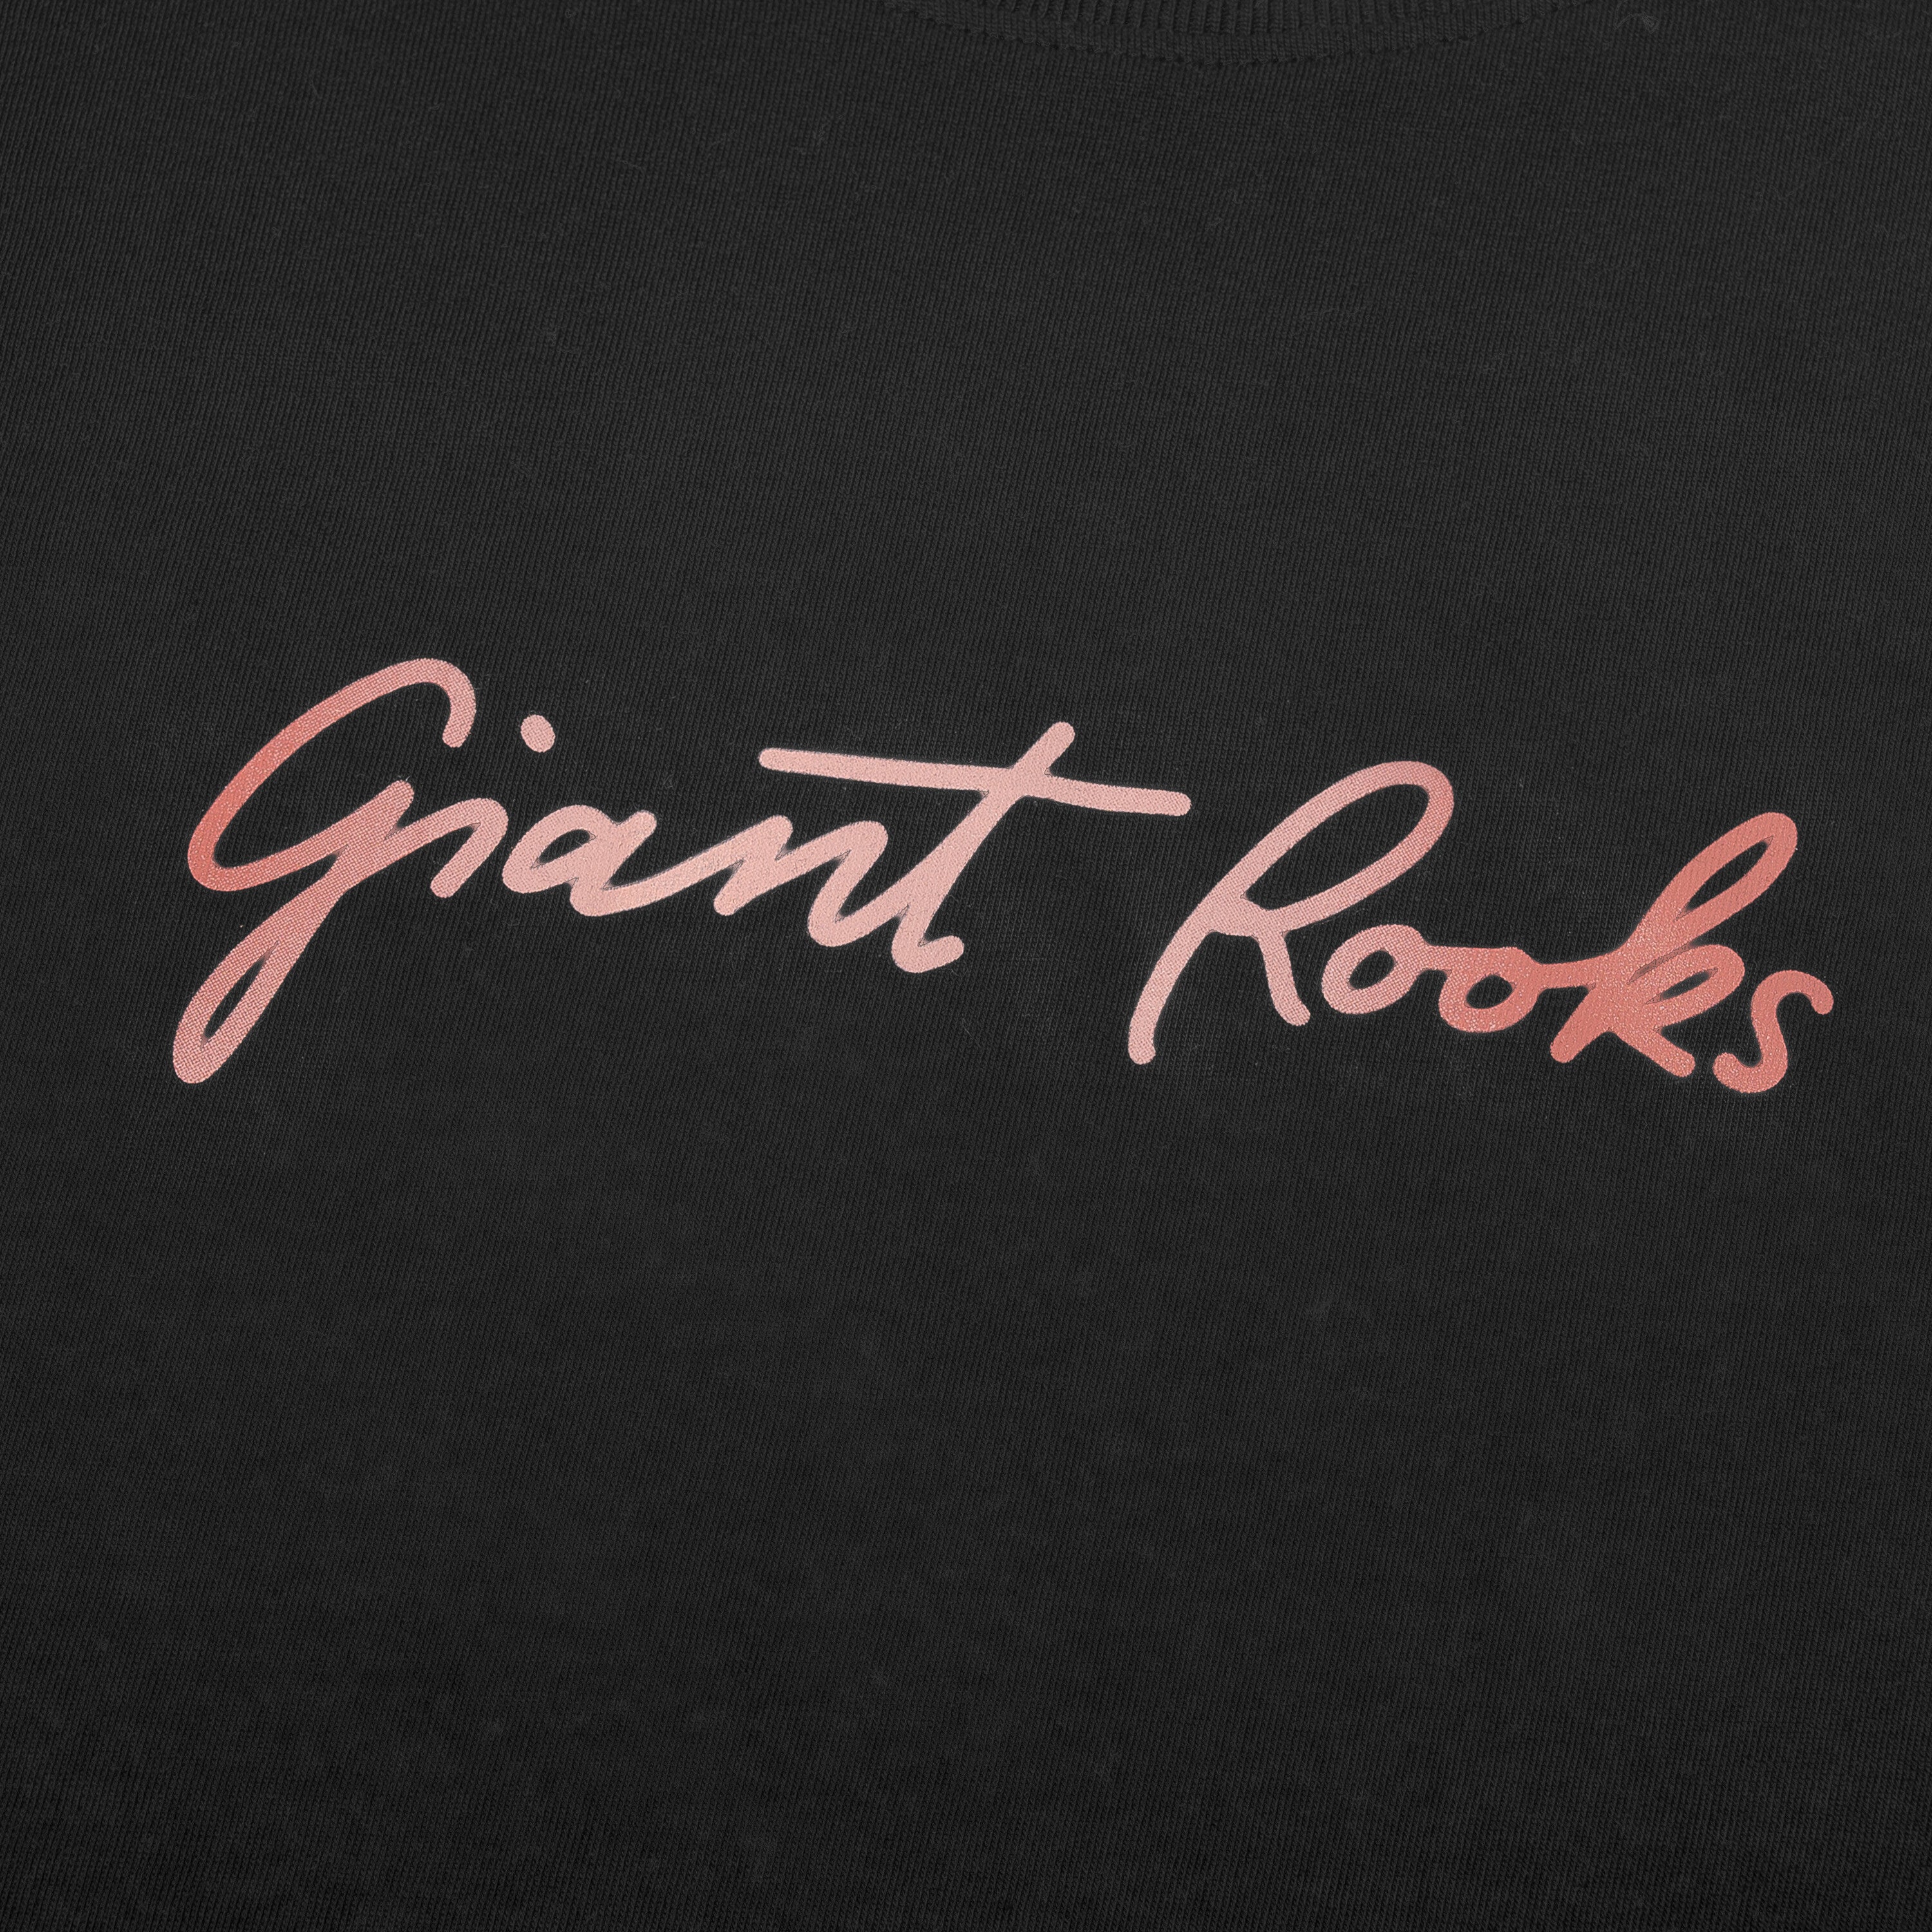 Giant Rooks - GR Logo Motiv T-Shirt.